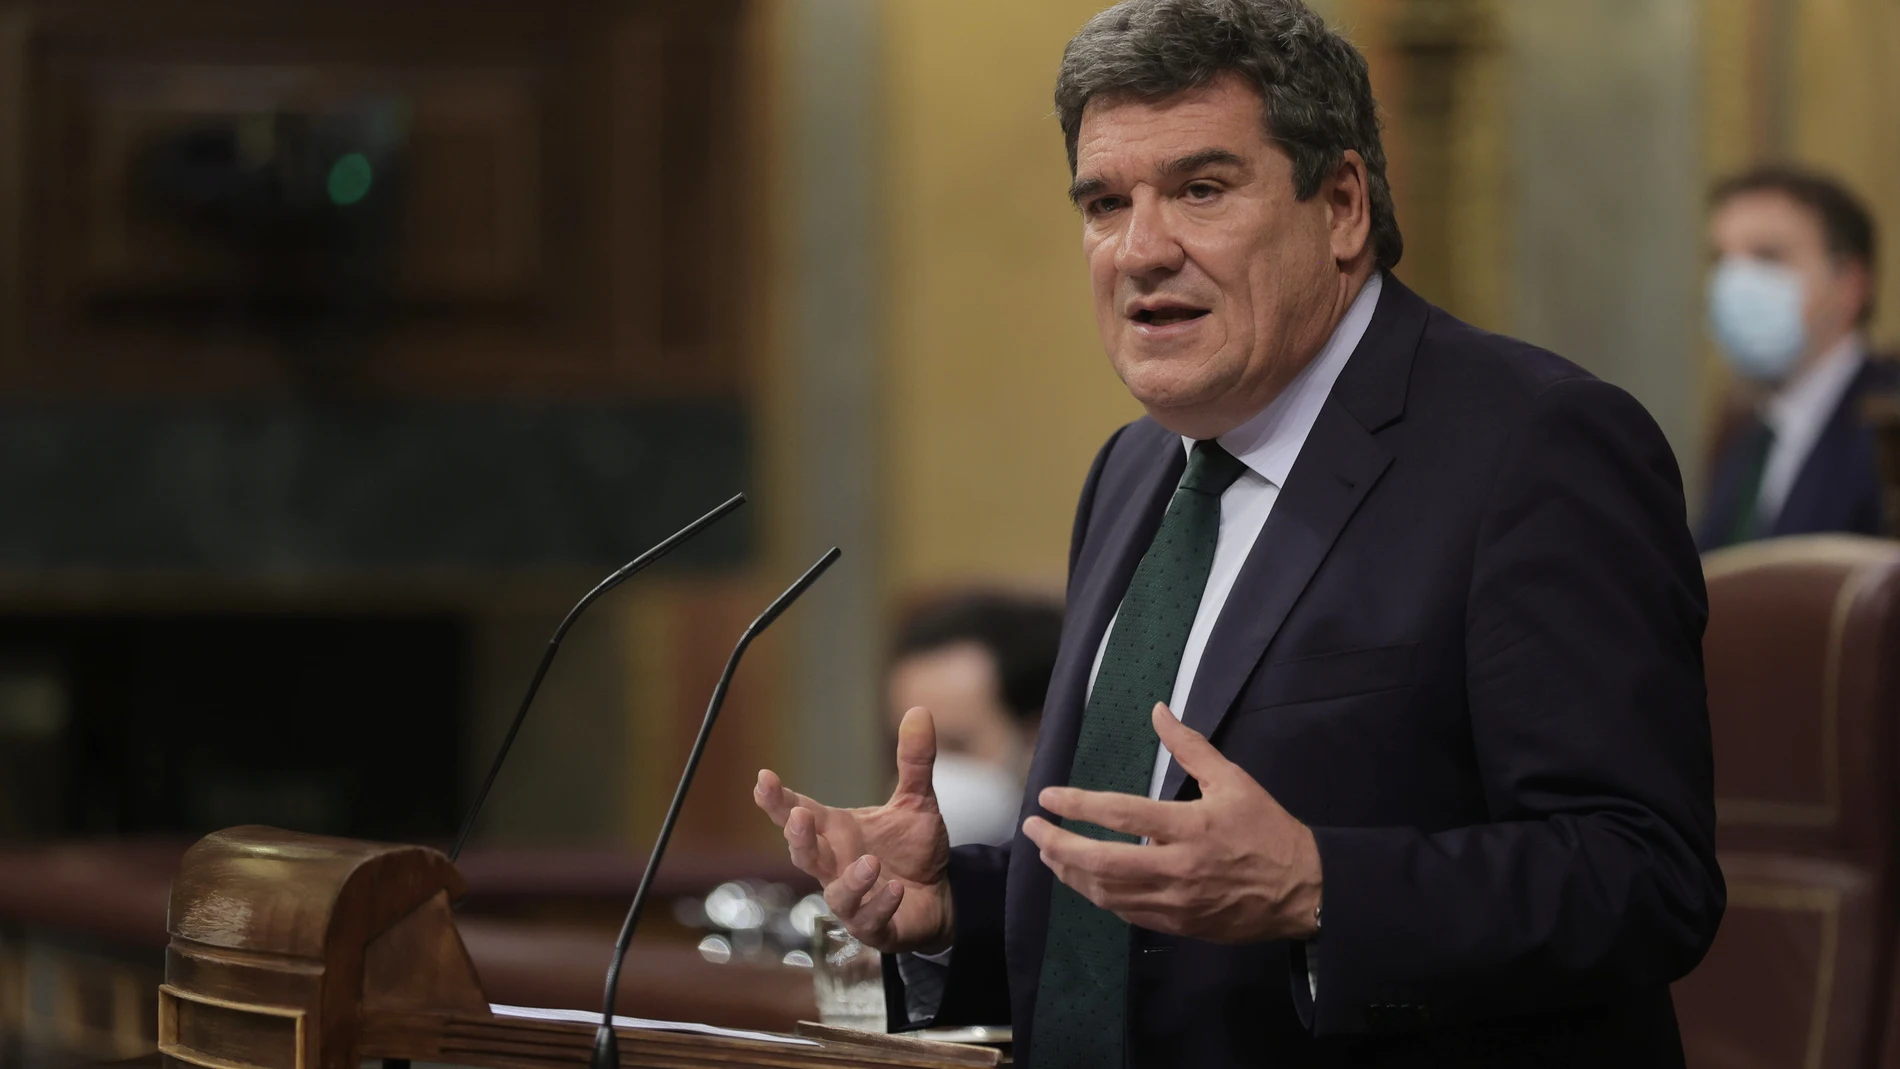 El ministro de Inclusión, Seguridad Social y Migraciones, José Luis Escrivá, en una sesión plenaria de la Cámara Baja, a 30 de septiembre de 2021, en Madrid (España)